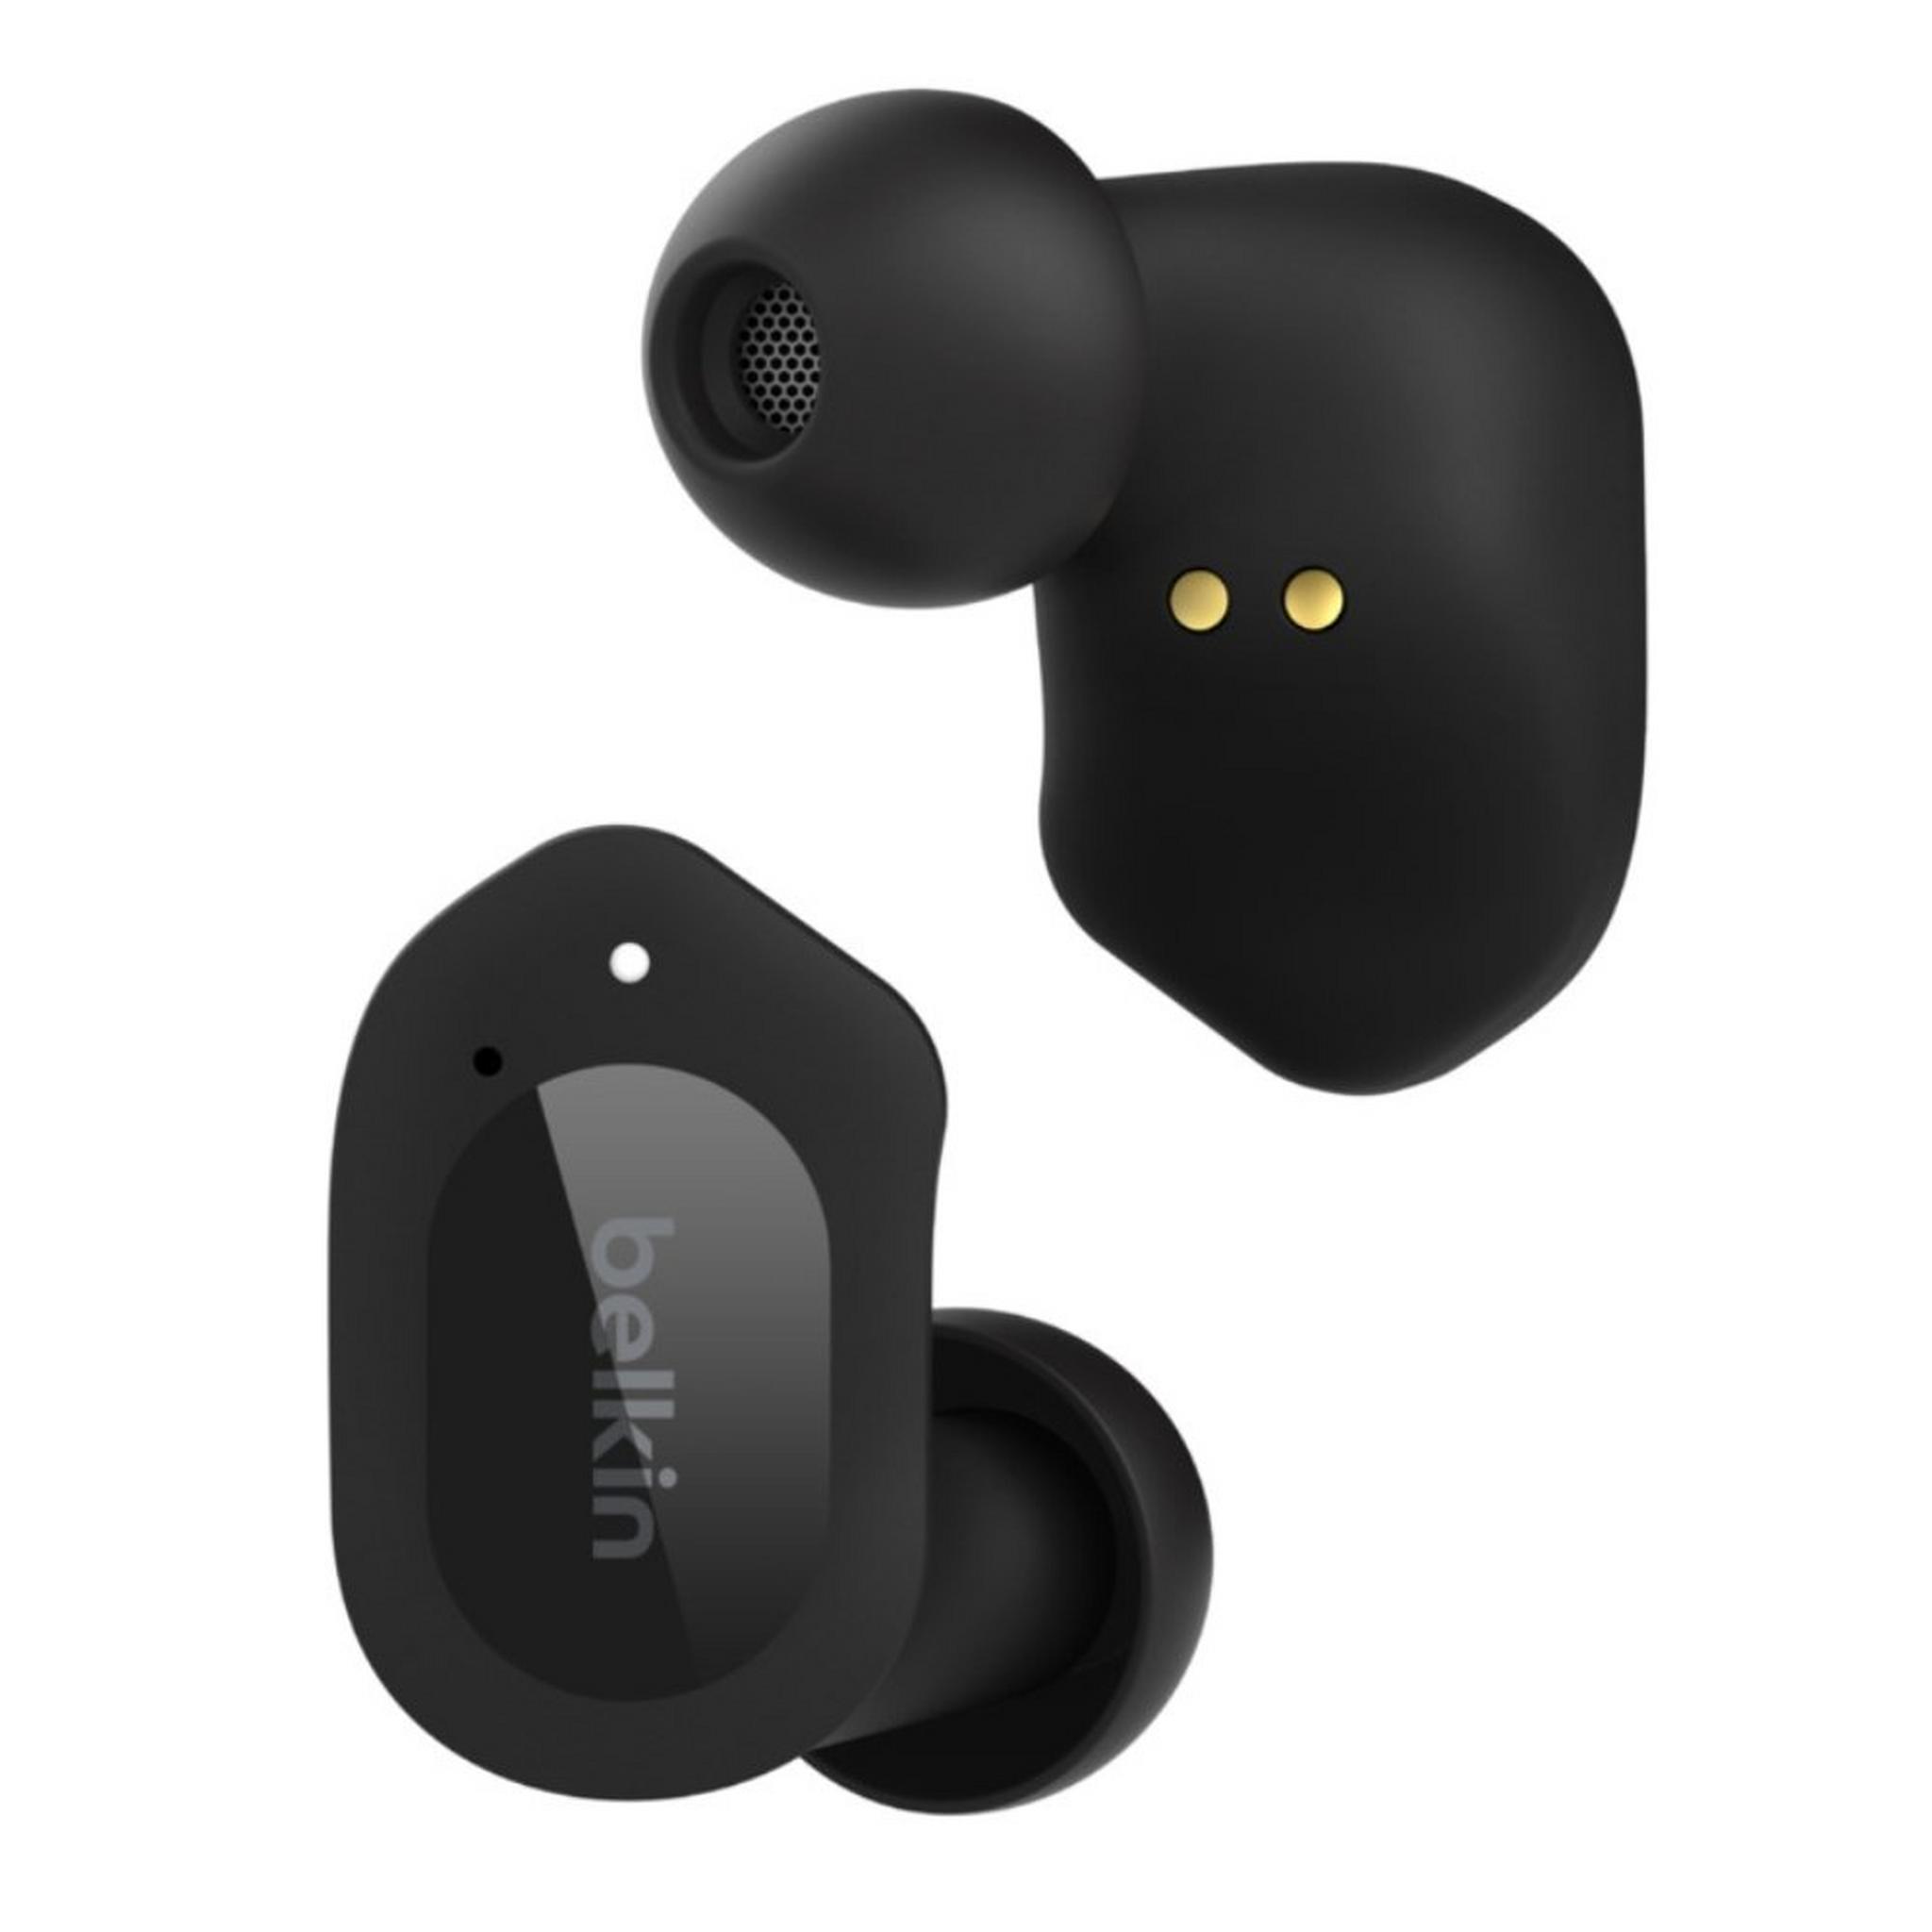 Belkin SoundForm Play True Wireless Earbuds - Black